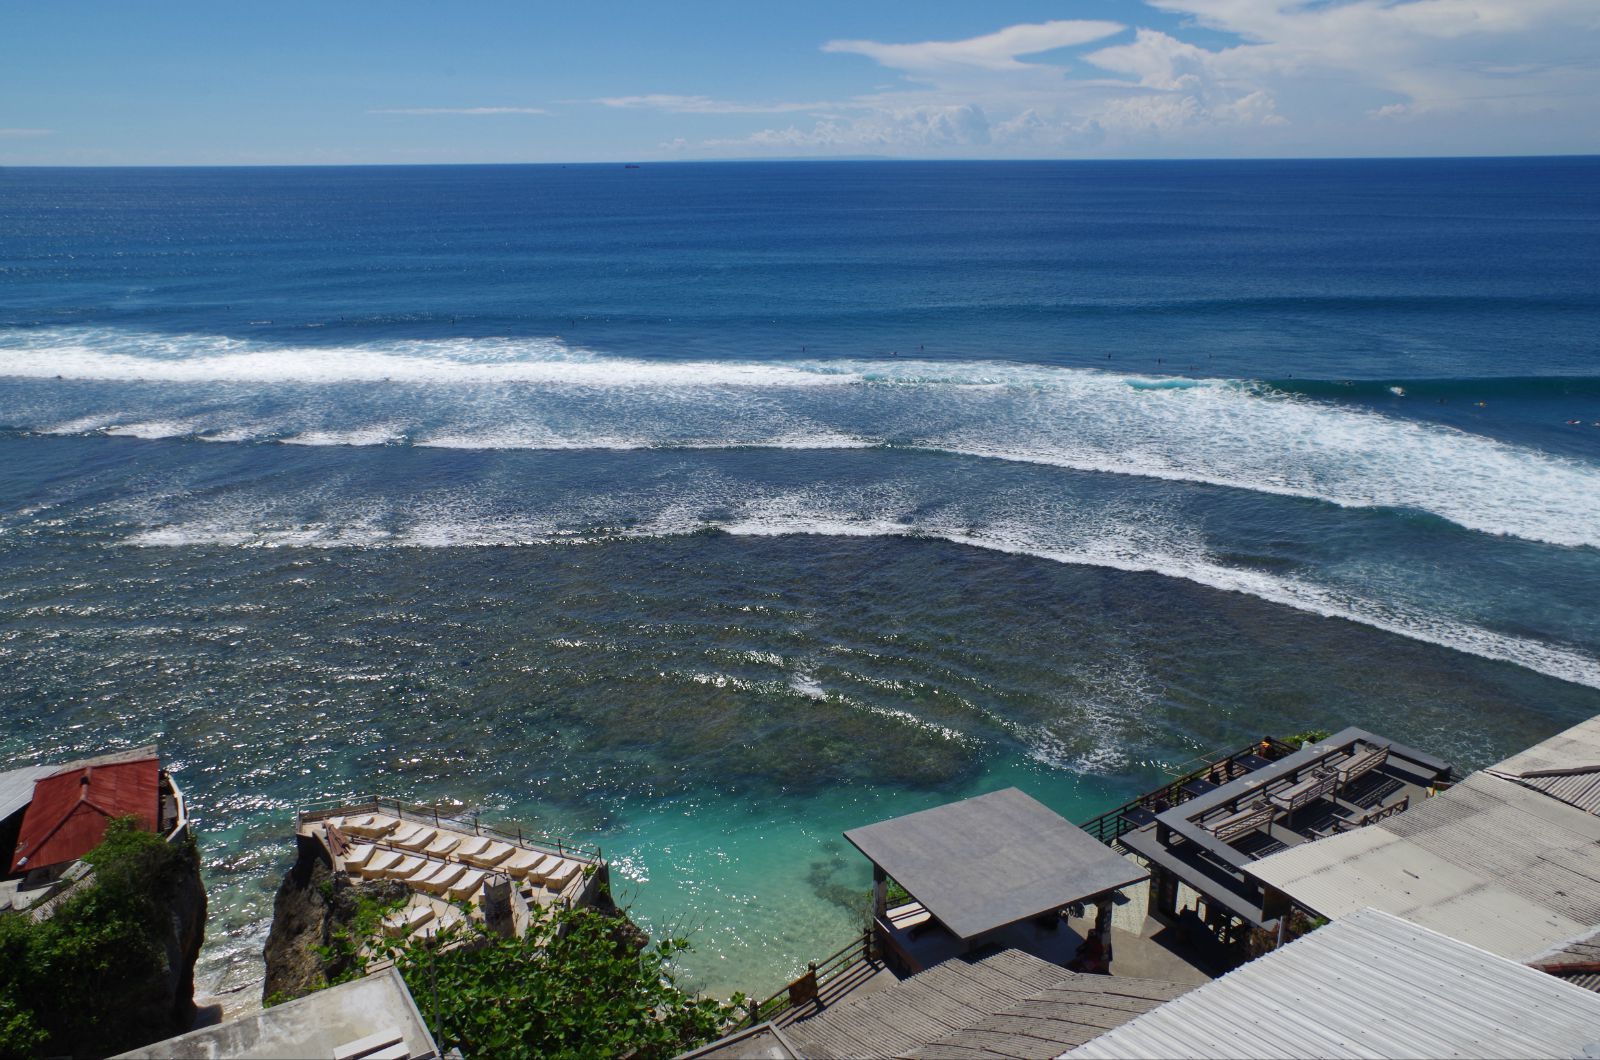 【携程攻略】巴厘岛蓝点景点,很著名的一个景点海景很